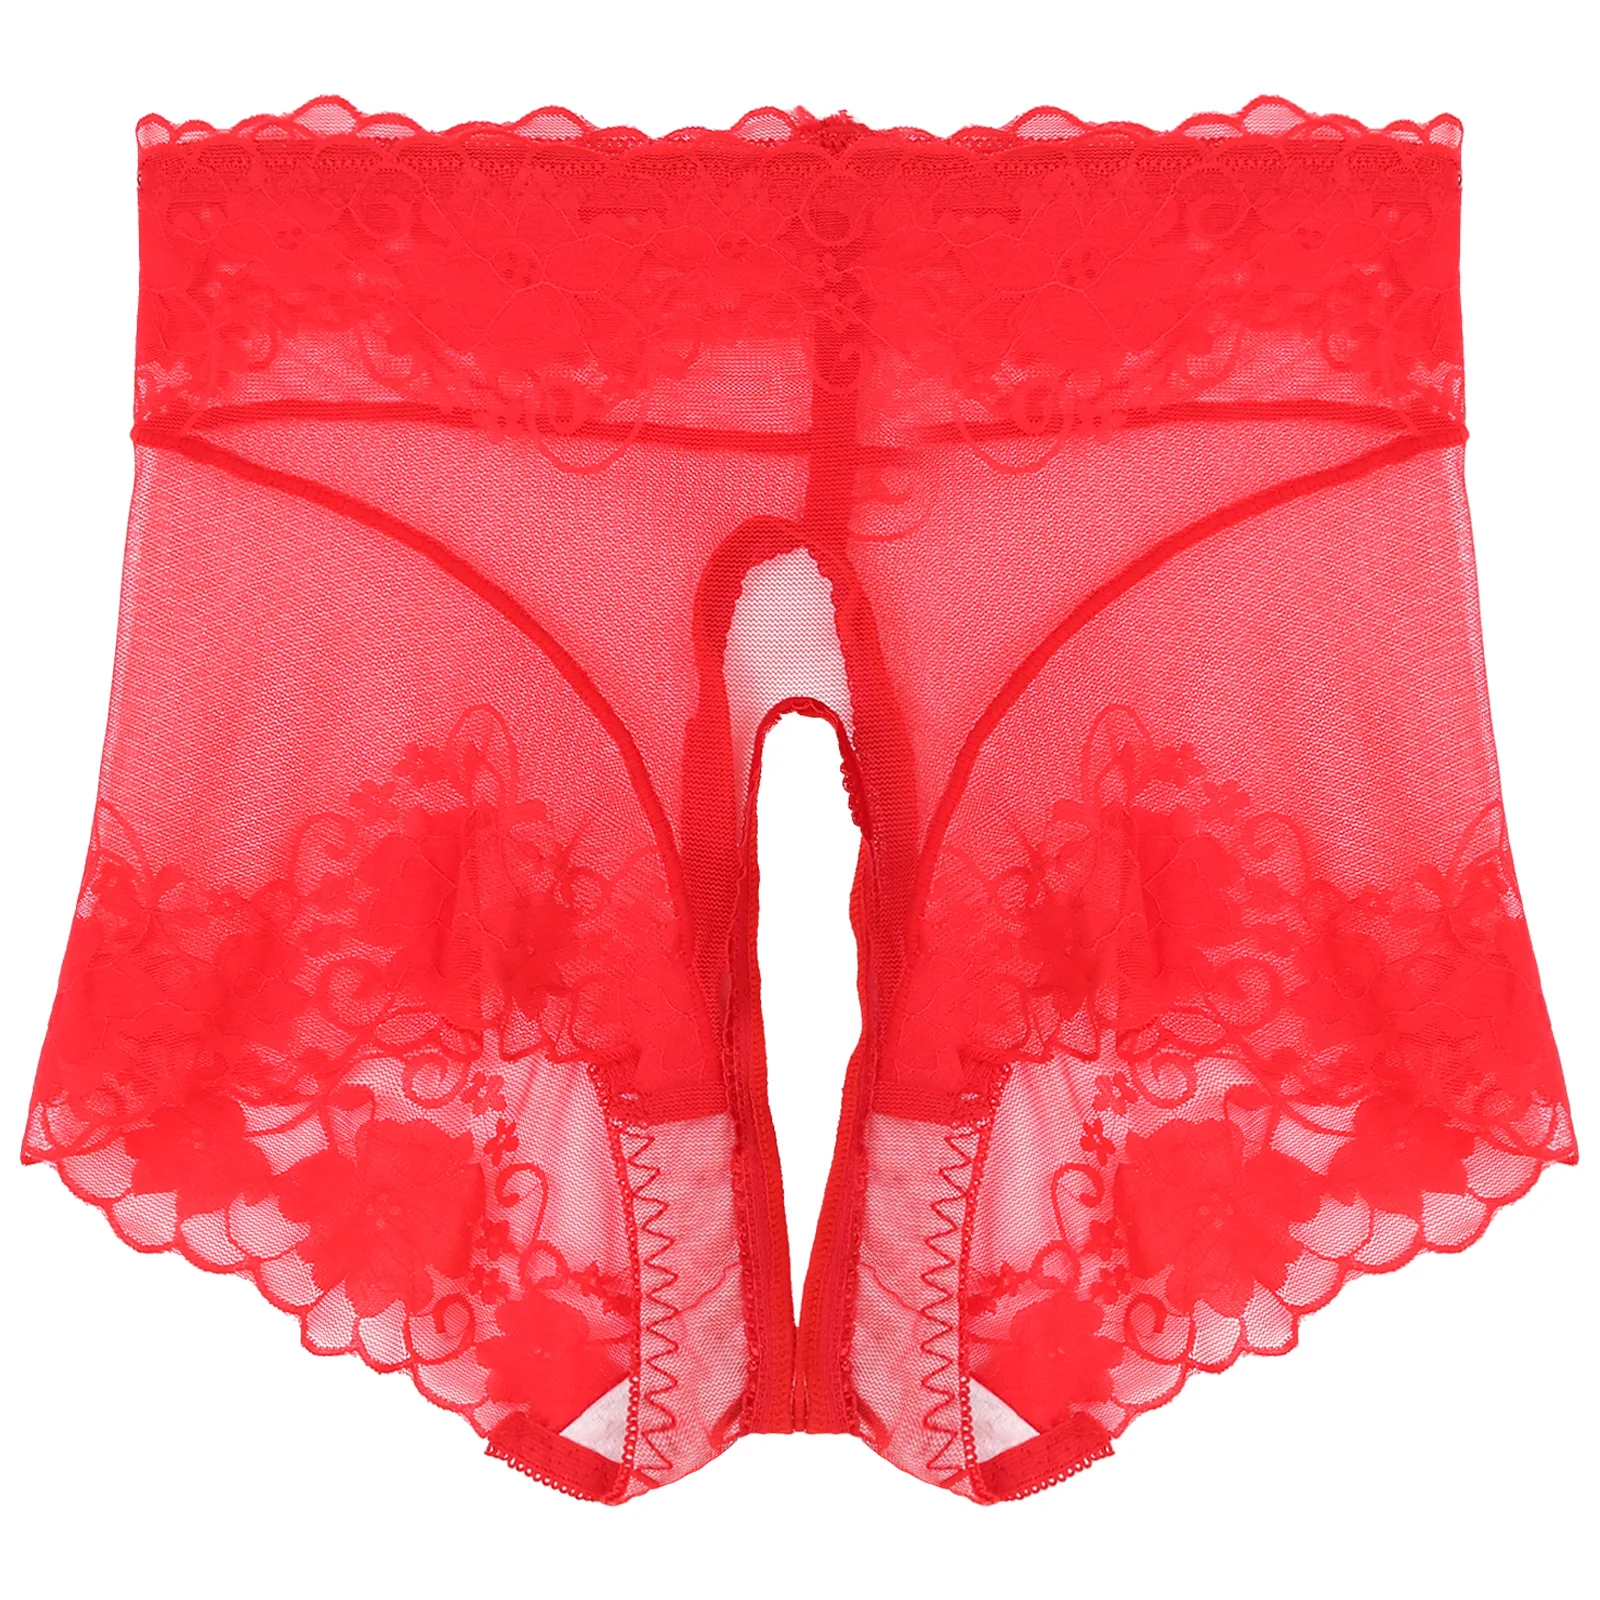 Cheap Flarixa Women Sexy Underwear Mid Waist Panties Scalloped